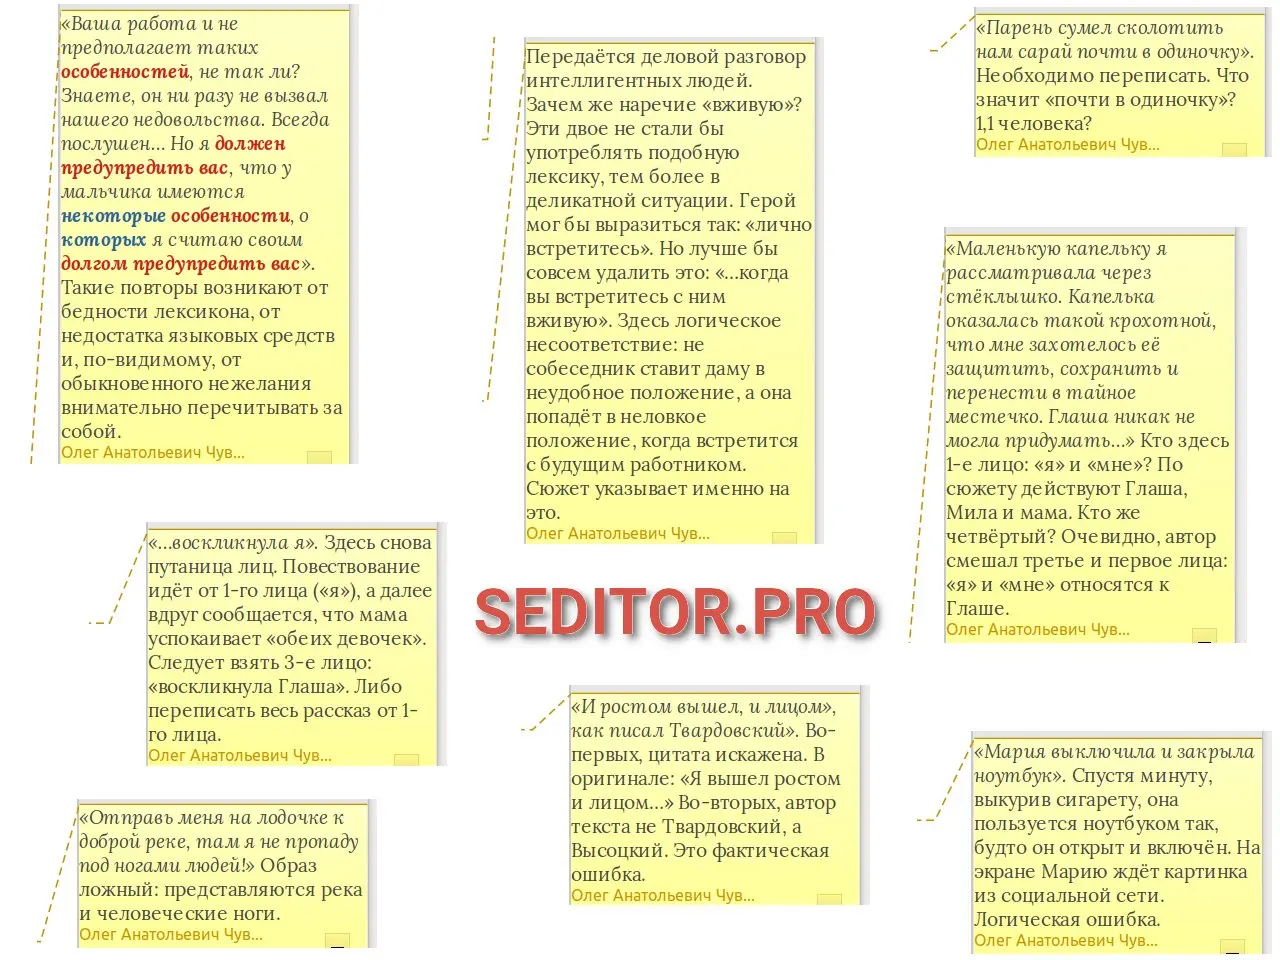 Примеры редакторских указаний на полях файла, образцы редакторского анализа